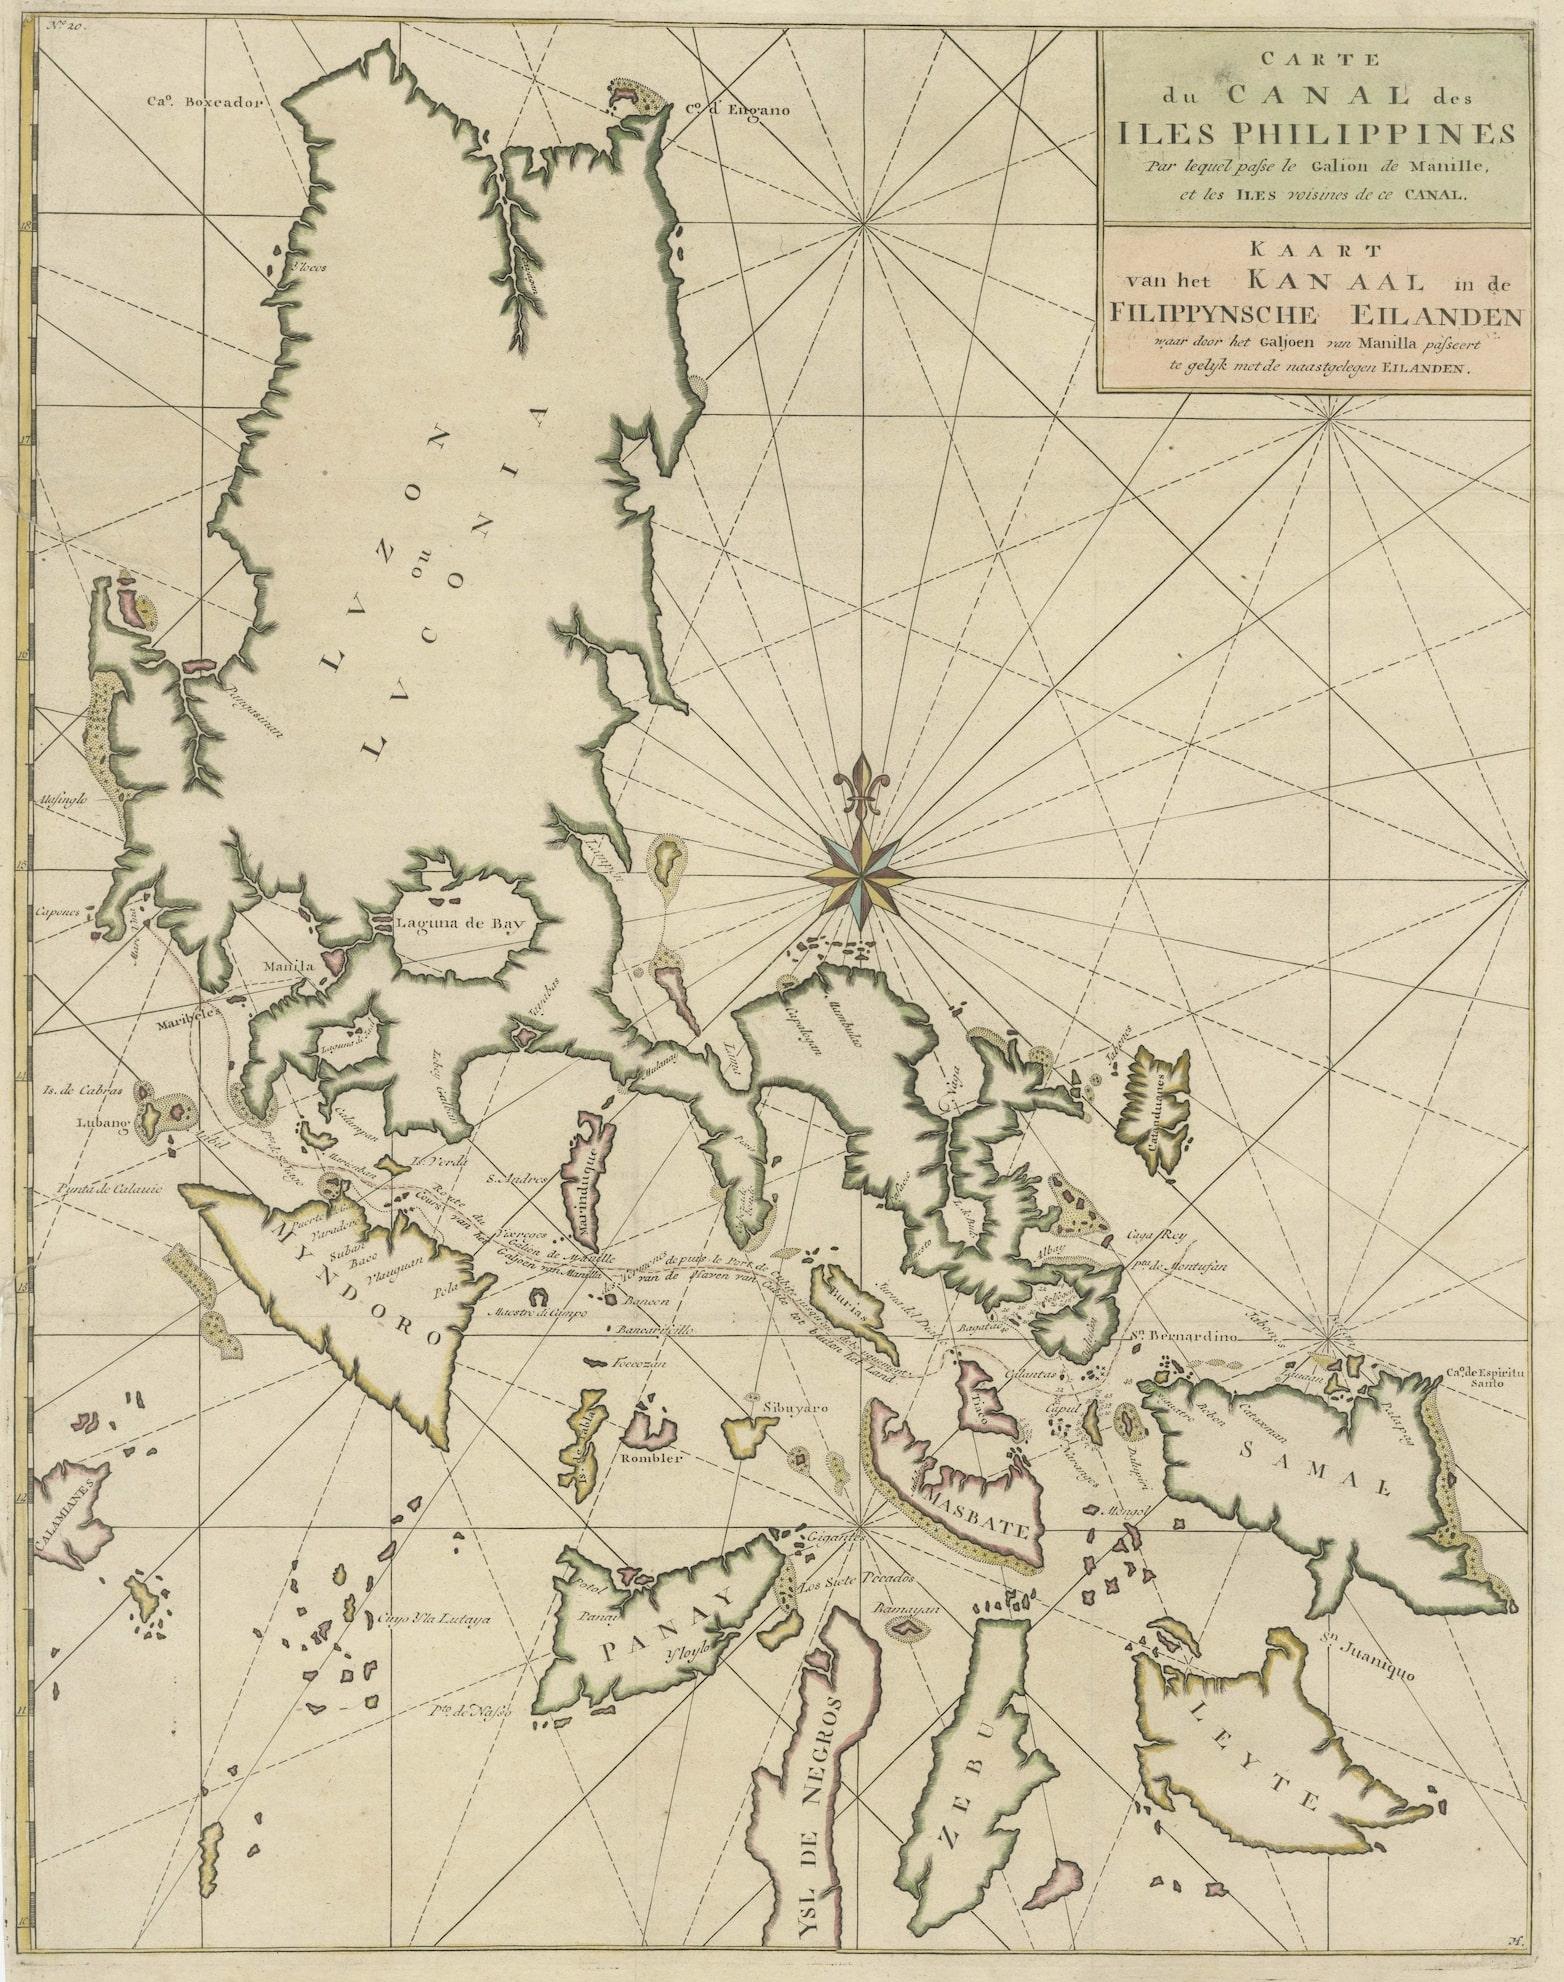 Originale antike Karte mit dem Titel 'Carte du Canal des Iles Philippines (..) - Kaart van het Kanaal in de Filippynsche Eilanden (..)'. Auffällige und sehr detaillierte Karte der Inseln der Philippinen. Zeigt Inseln, Buchten, Riffe,